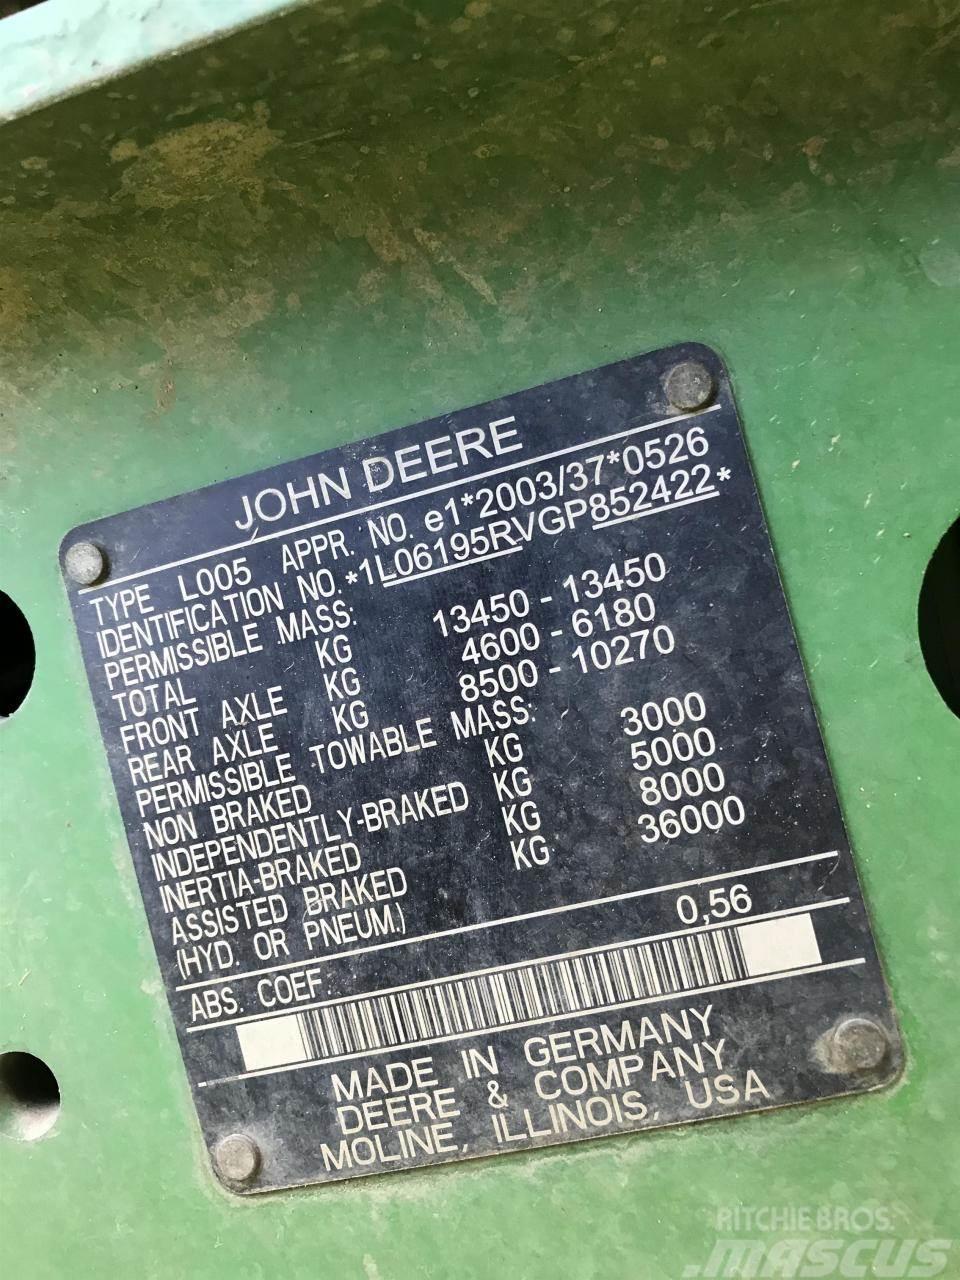 John Deere 6195R Tractors